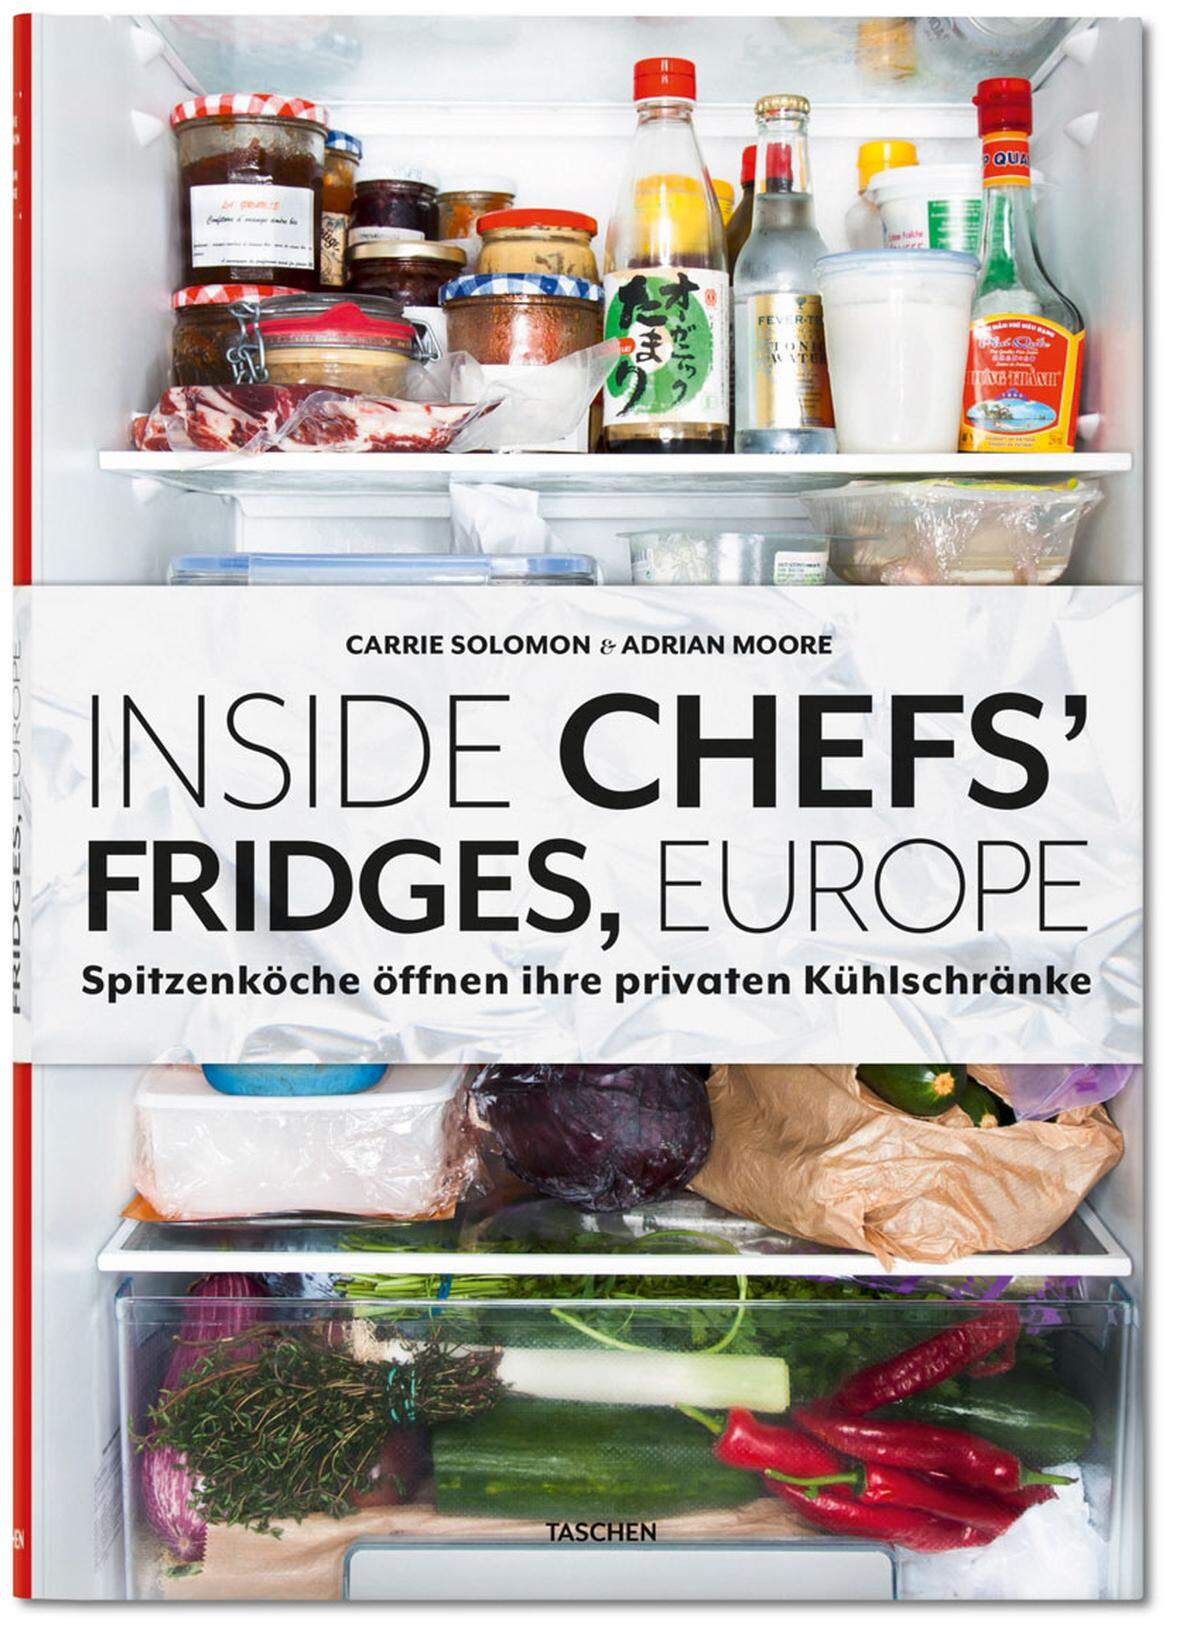 Tupperware, Käse mit Pelzbesatz, ein angekrustetes Reindl - Kühlschränke stecken manchmal voller vergessener Überraschungen. Ein neues Buch enthüllt nun ein paar besondere Anblicke. Der Taschen Verlag hat für "Inside Chefs’ Fridges" 40 europäische Spitzenköche zuhause besucht und nachgesehen, was sie in ihren Kühlschränken haben. 